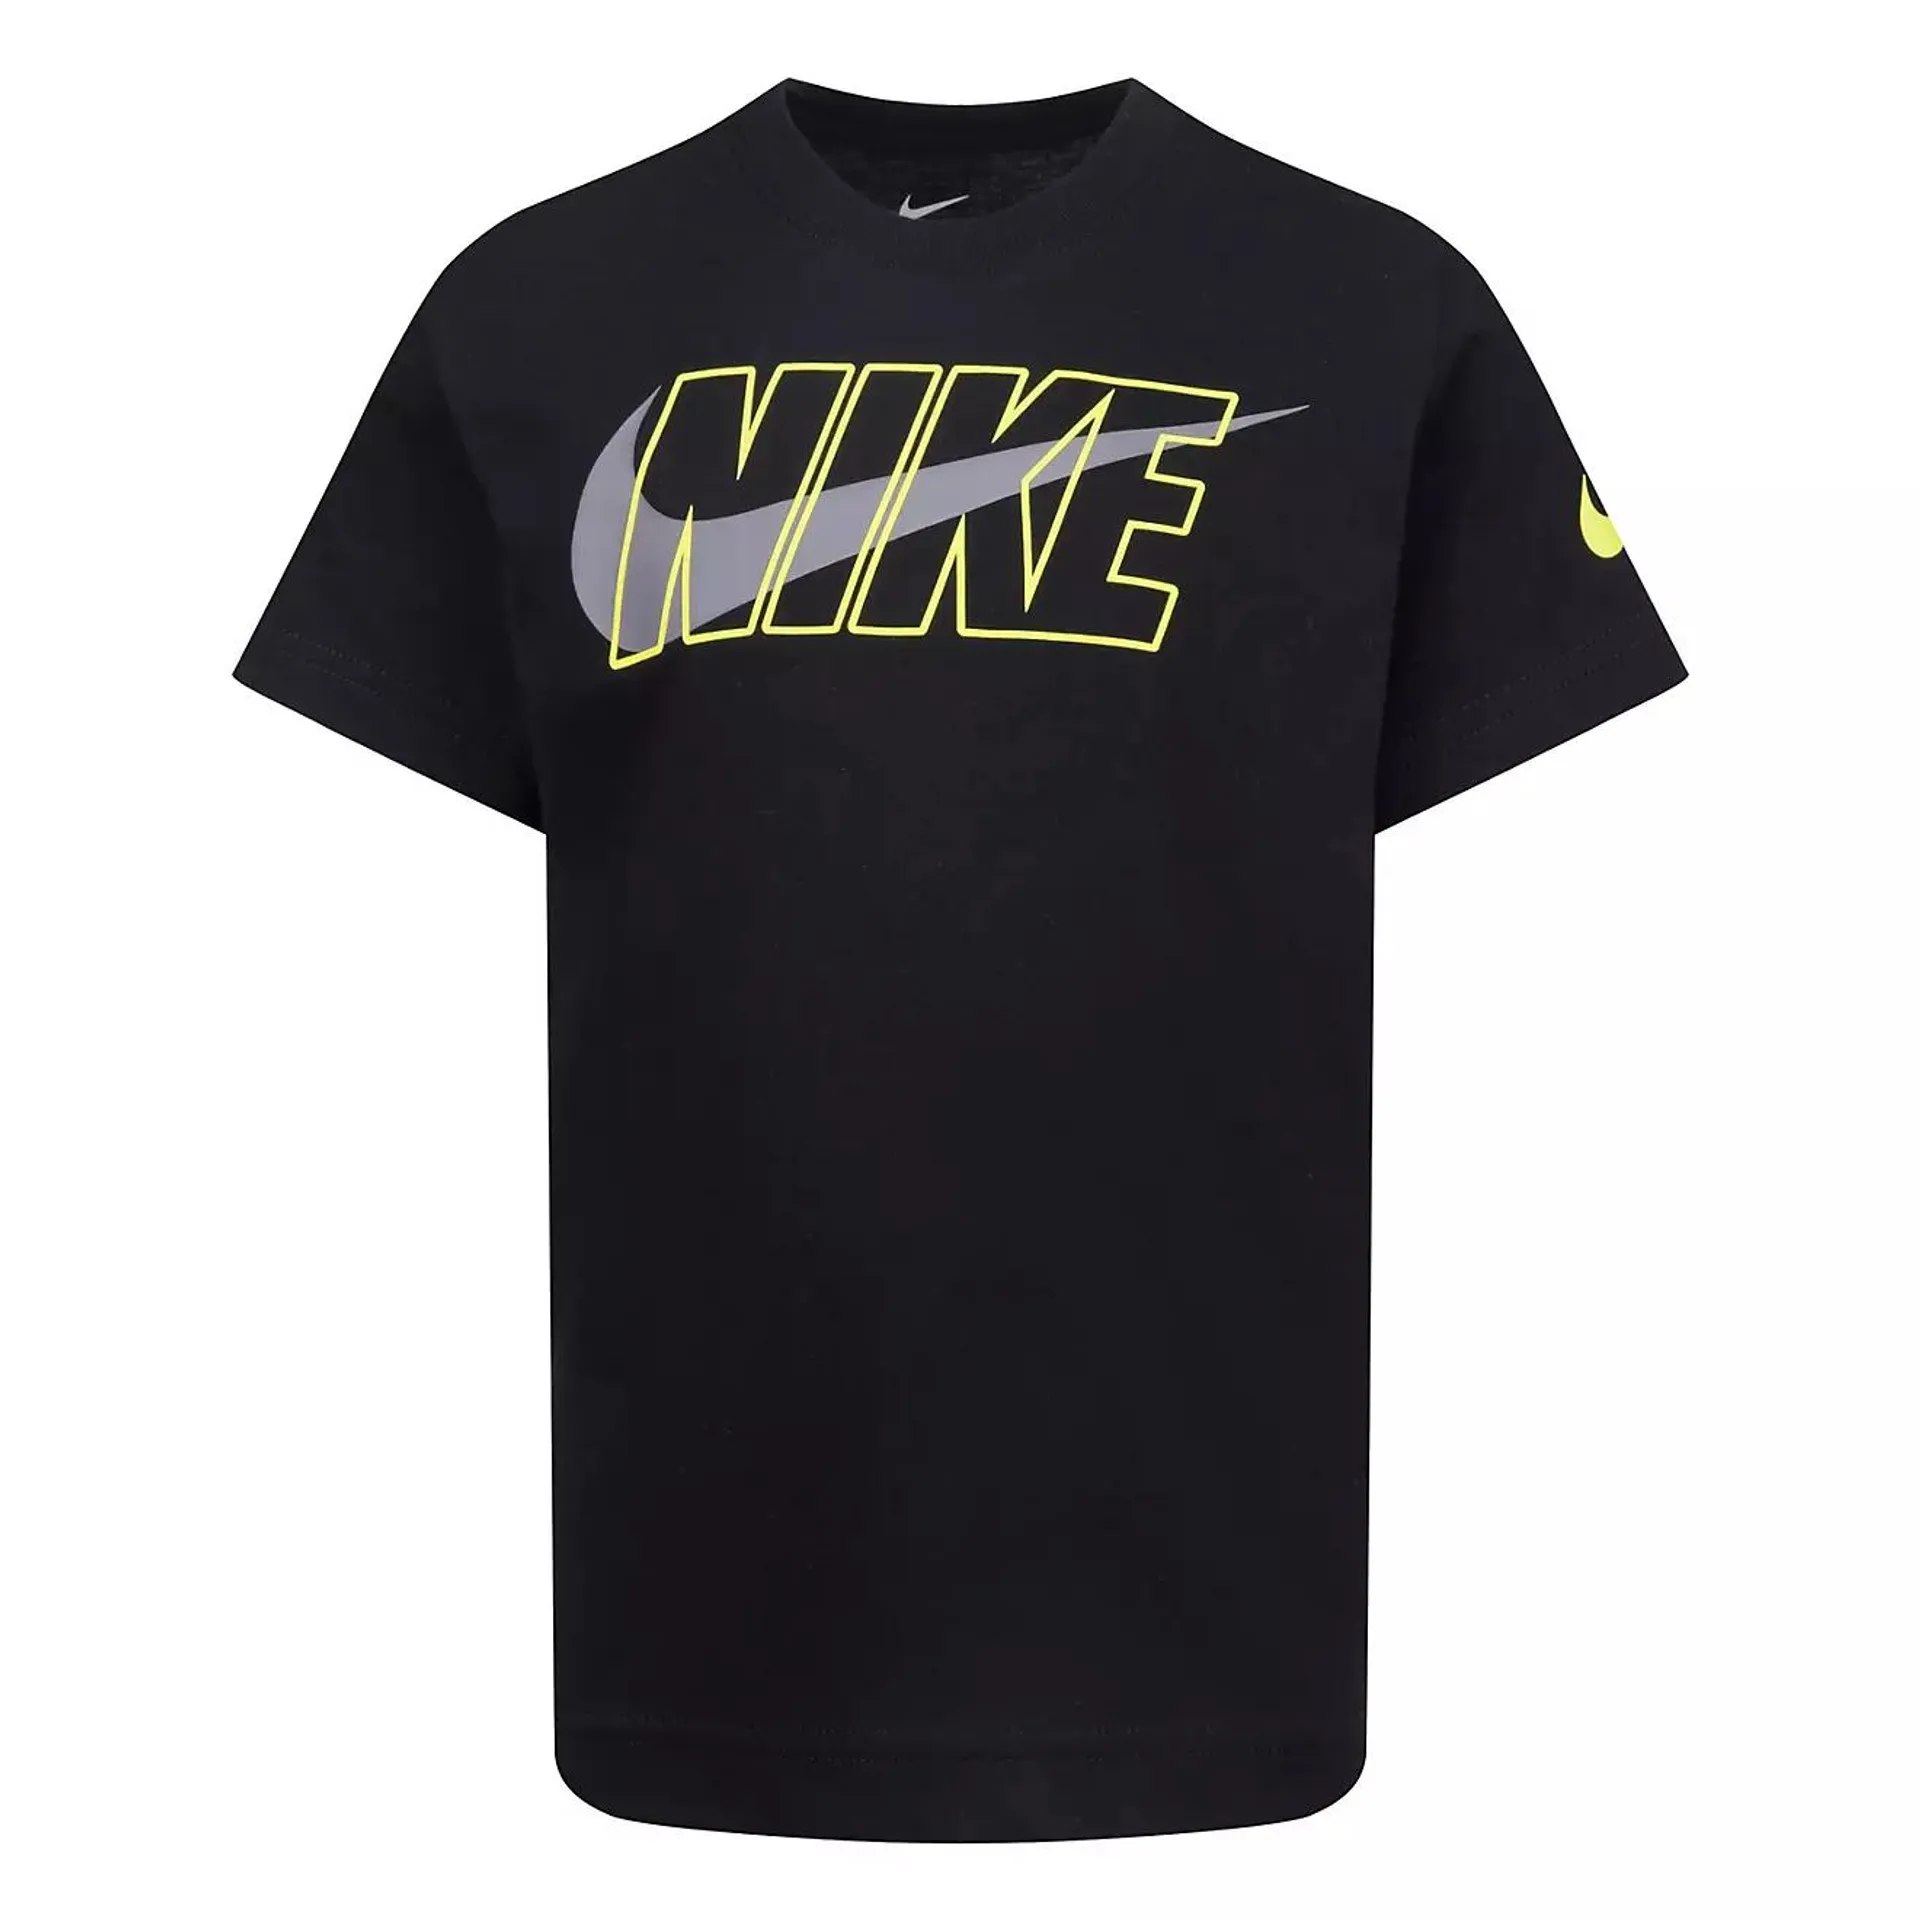 Nike Boys' 4-7 Stronger Short Sleeve T-shirt